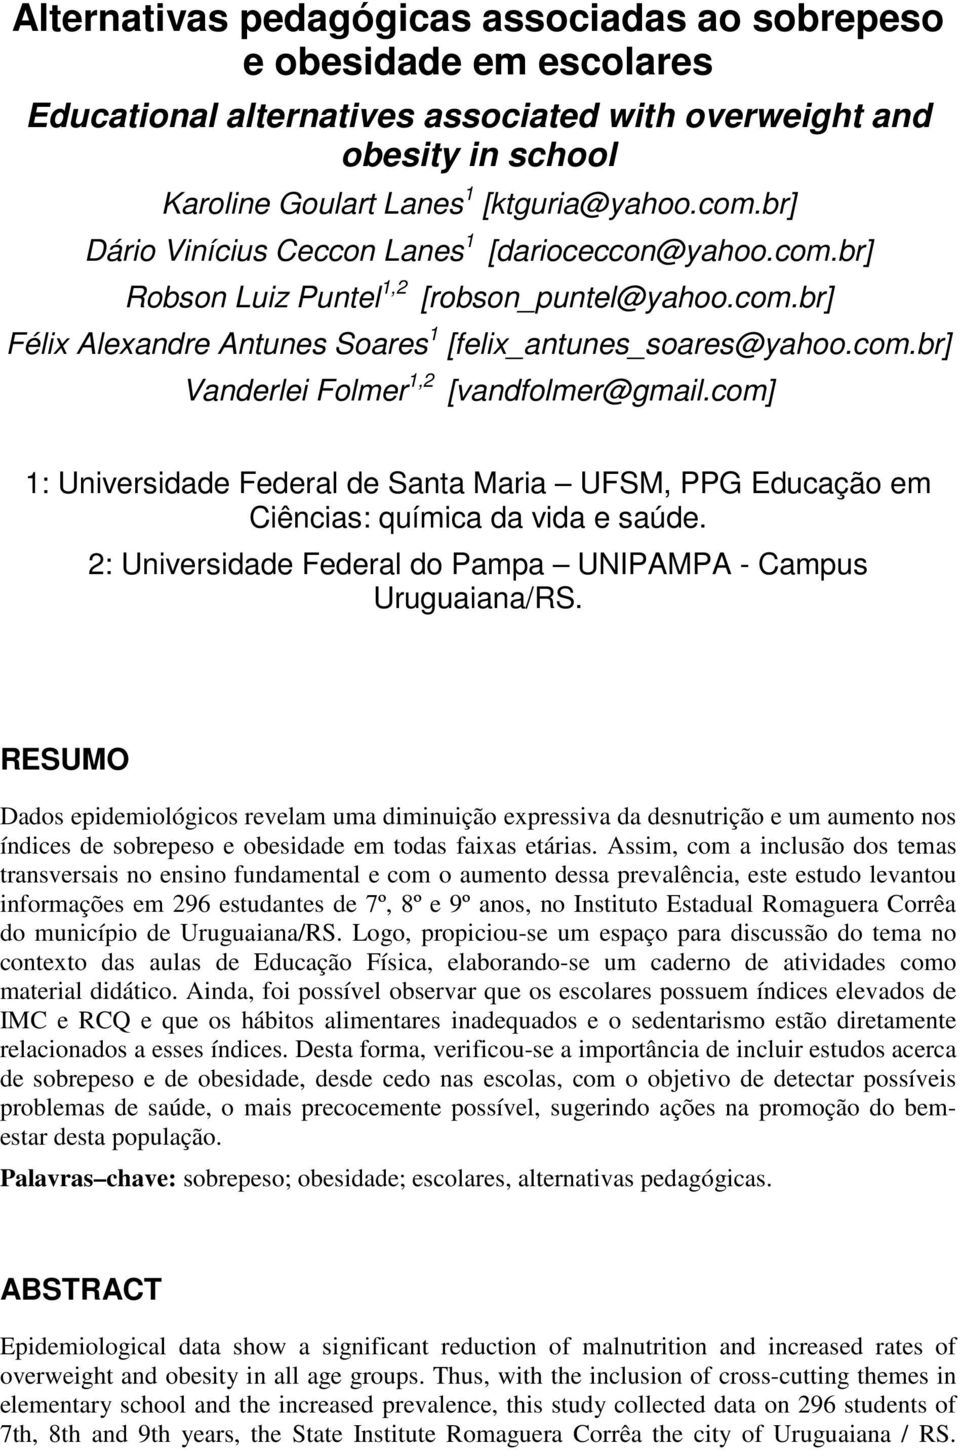 com] 1: Universidade Federal de Santa Maria UFSM, PPG Educação em Ciências: química da vida e saúde. 2: Universidade Federal do Pampa UNIPAMPA - Campus Uruguaiana/RS.